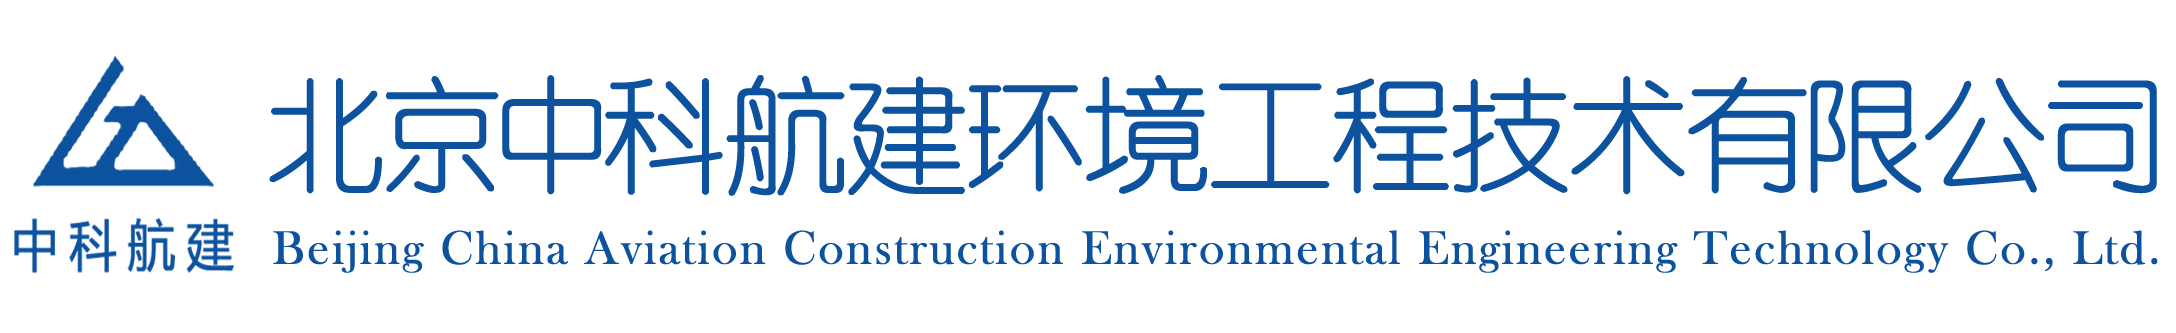 北京中科航建环境工程技术有限公司